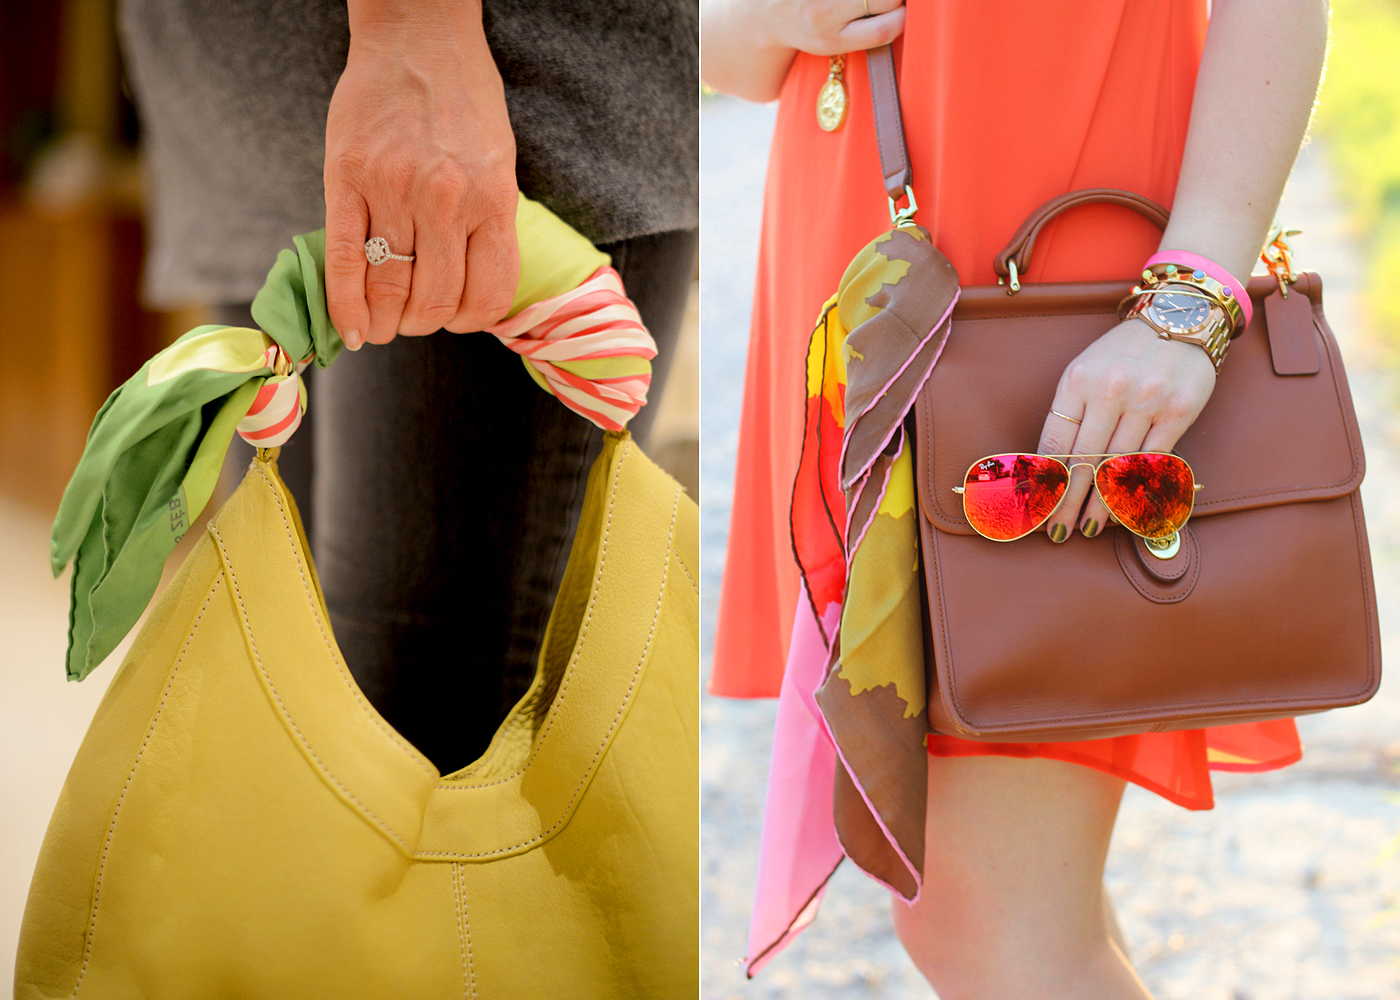 Így dobd fel vele a táskád: a kendő színe harmonizálhat a táskád vagy az öltözéked árnyalataival.